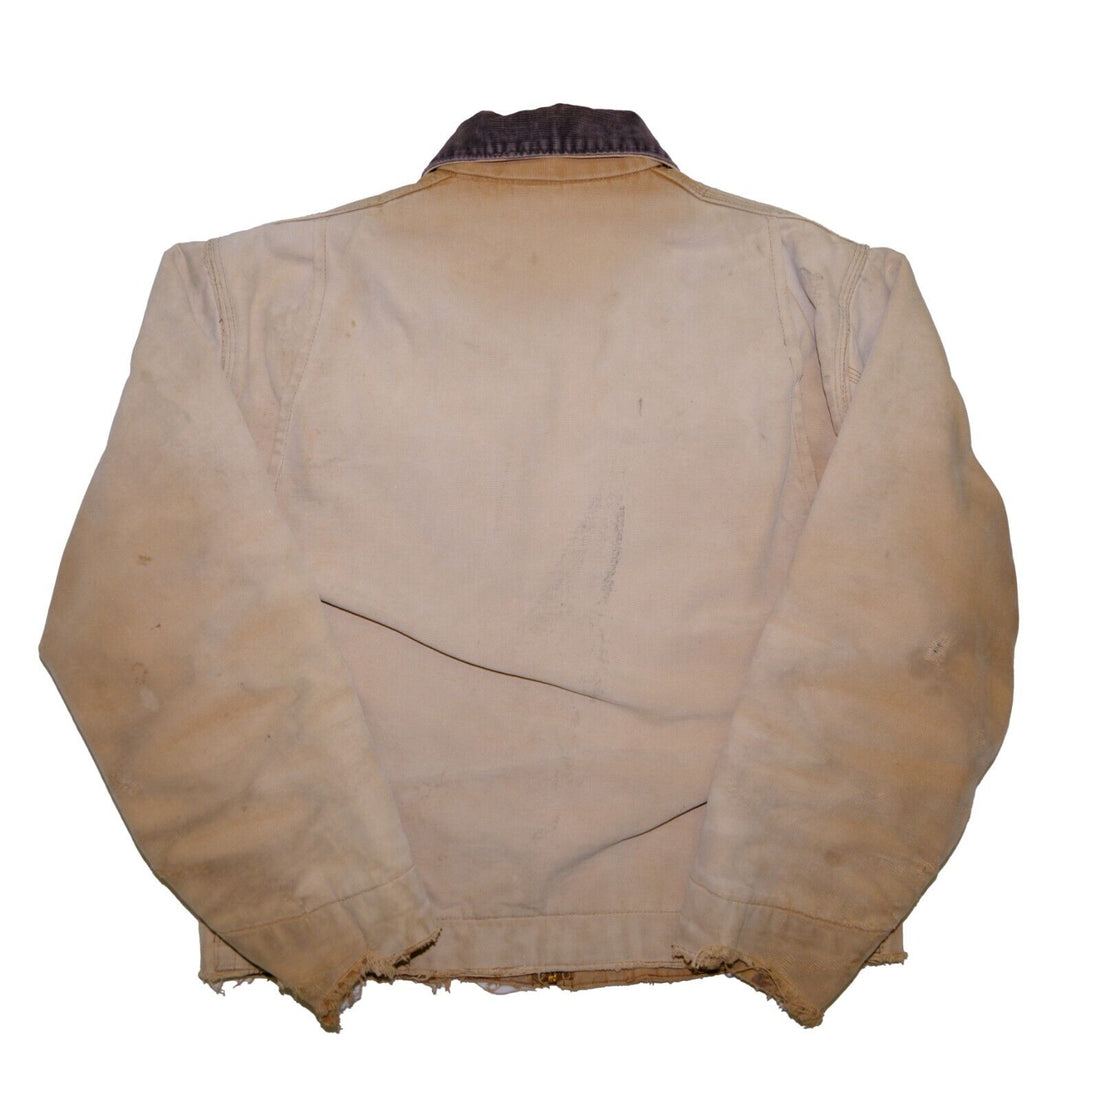 Vintage Carhartt Canvas Detroit Work Jacket Size Large Tan Blanket Lined